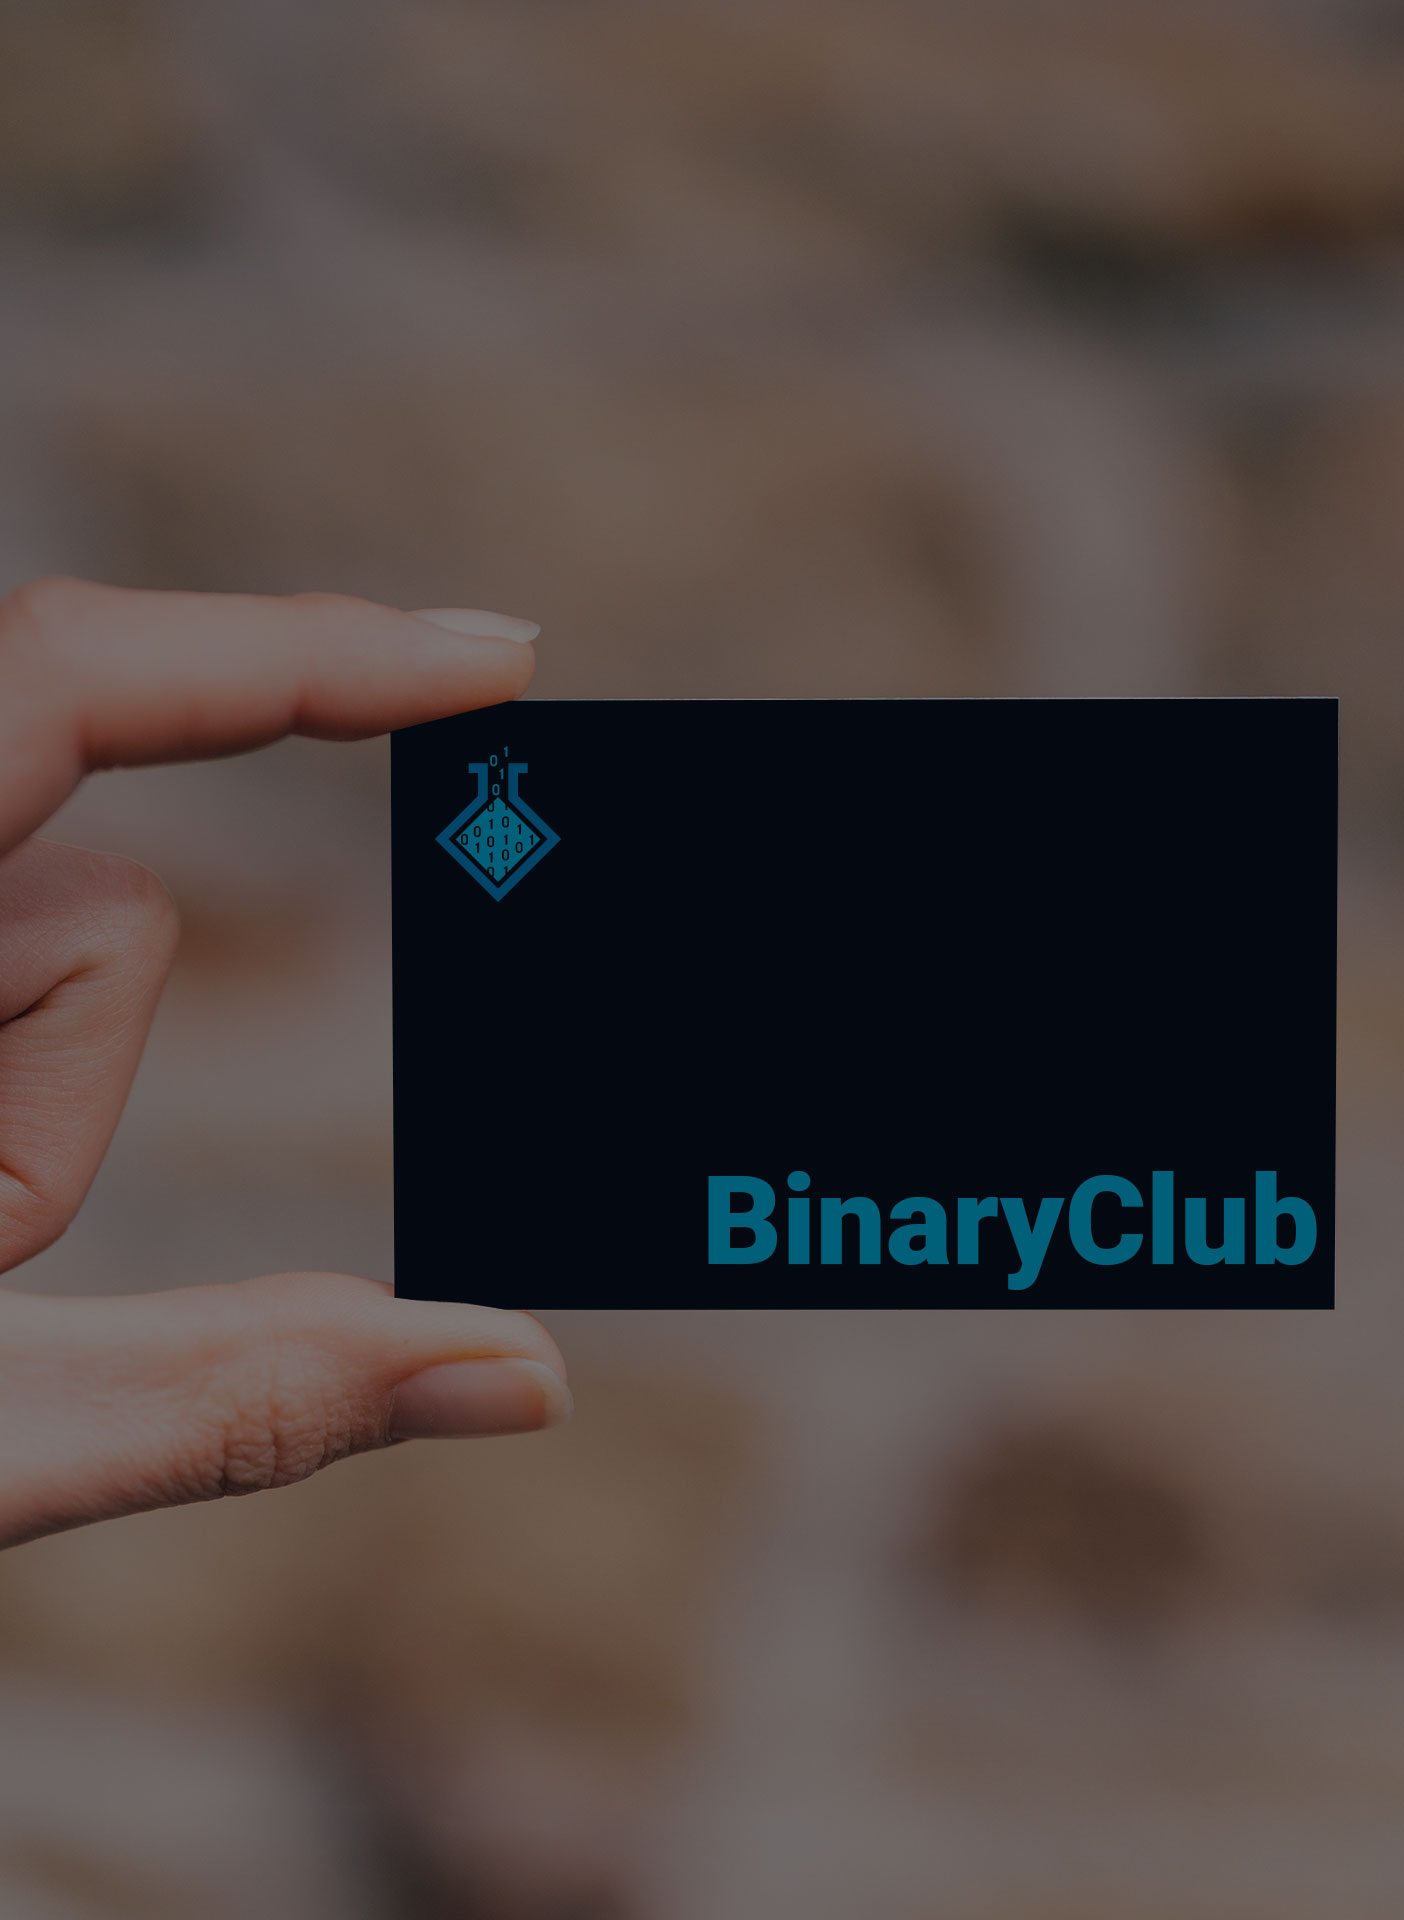 BinaryClub